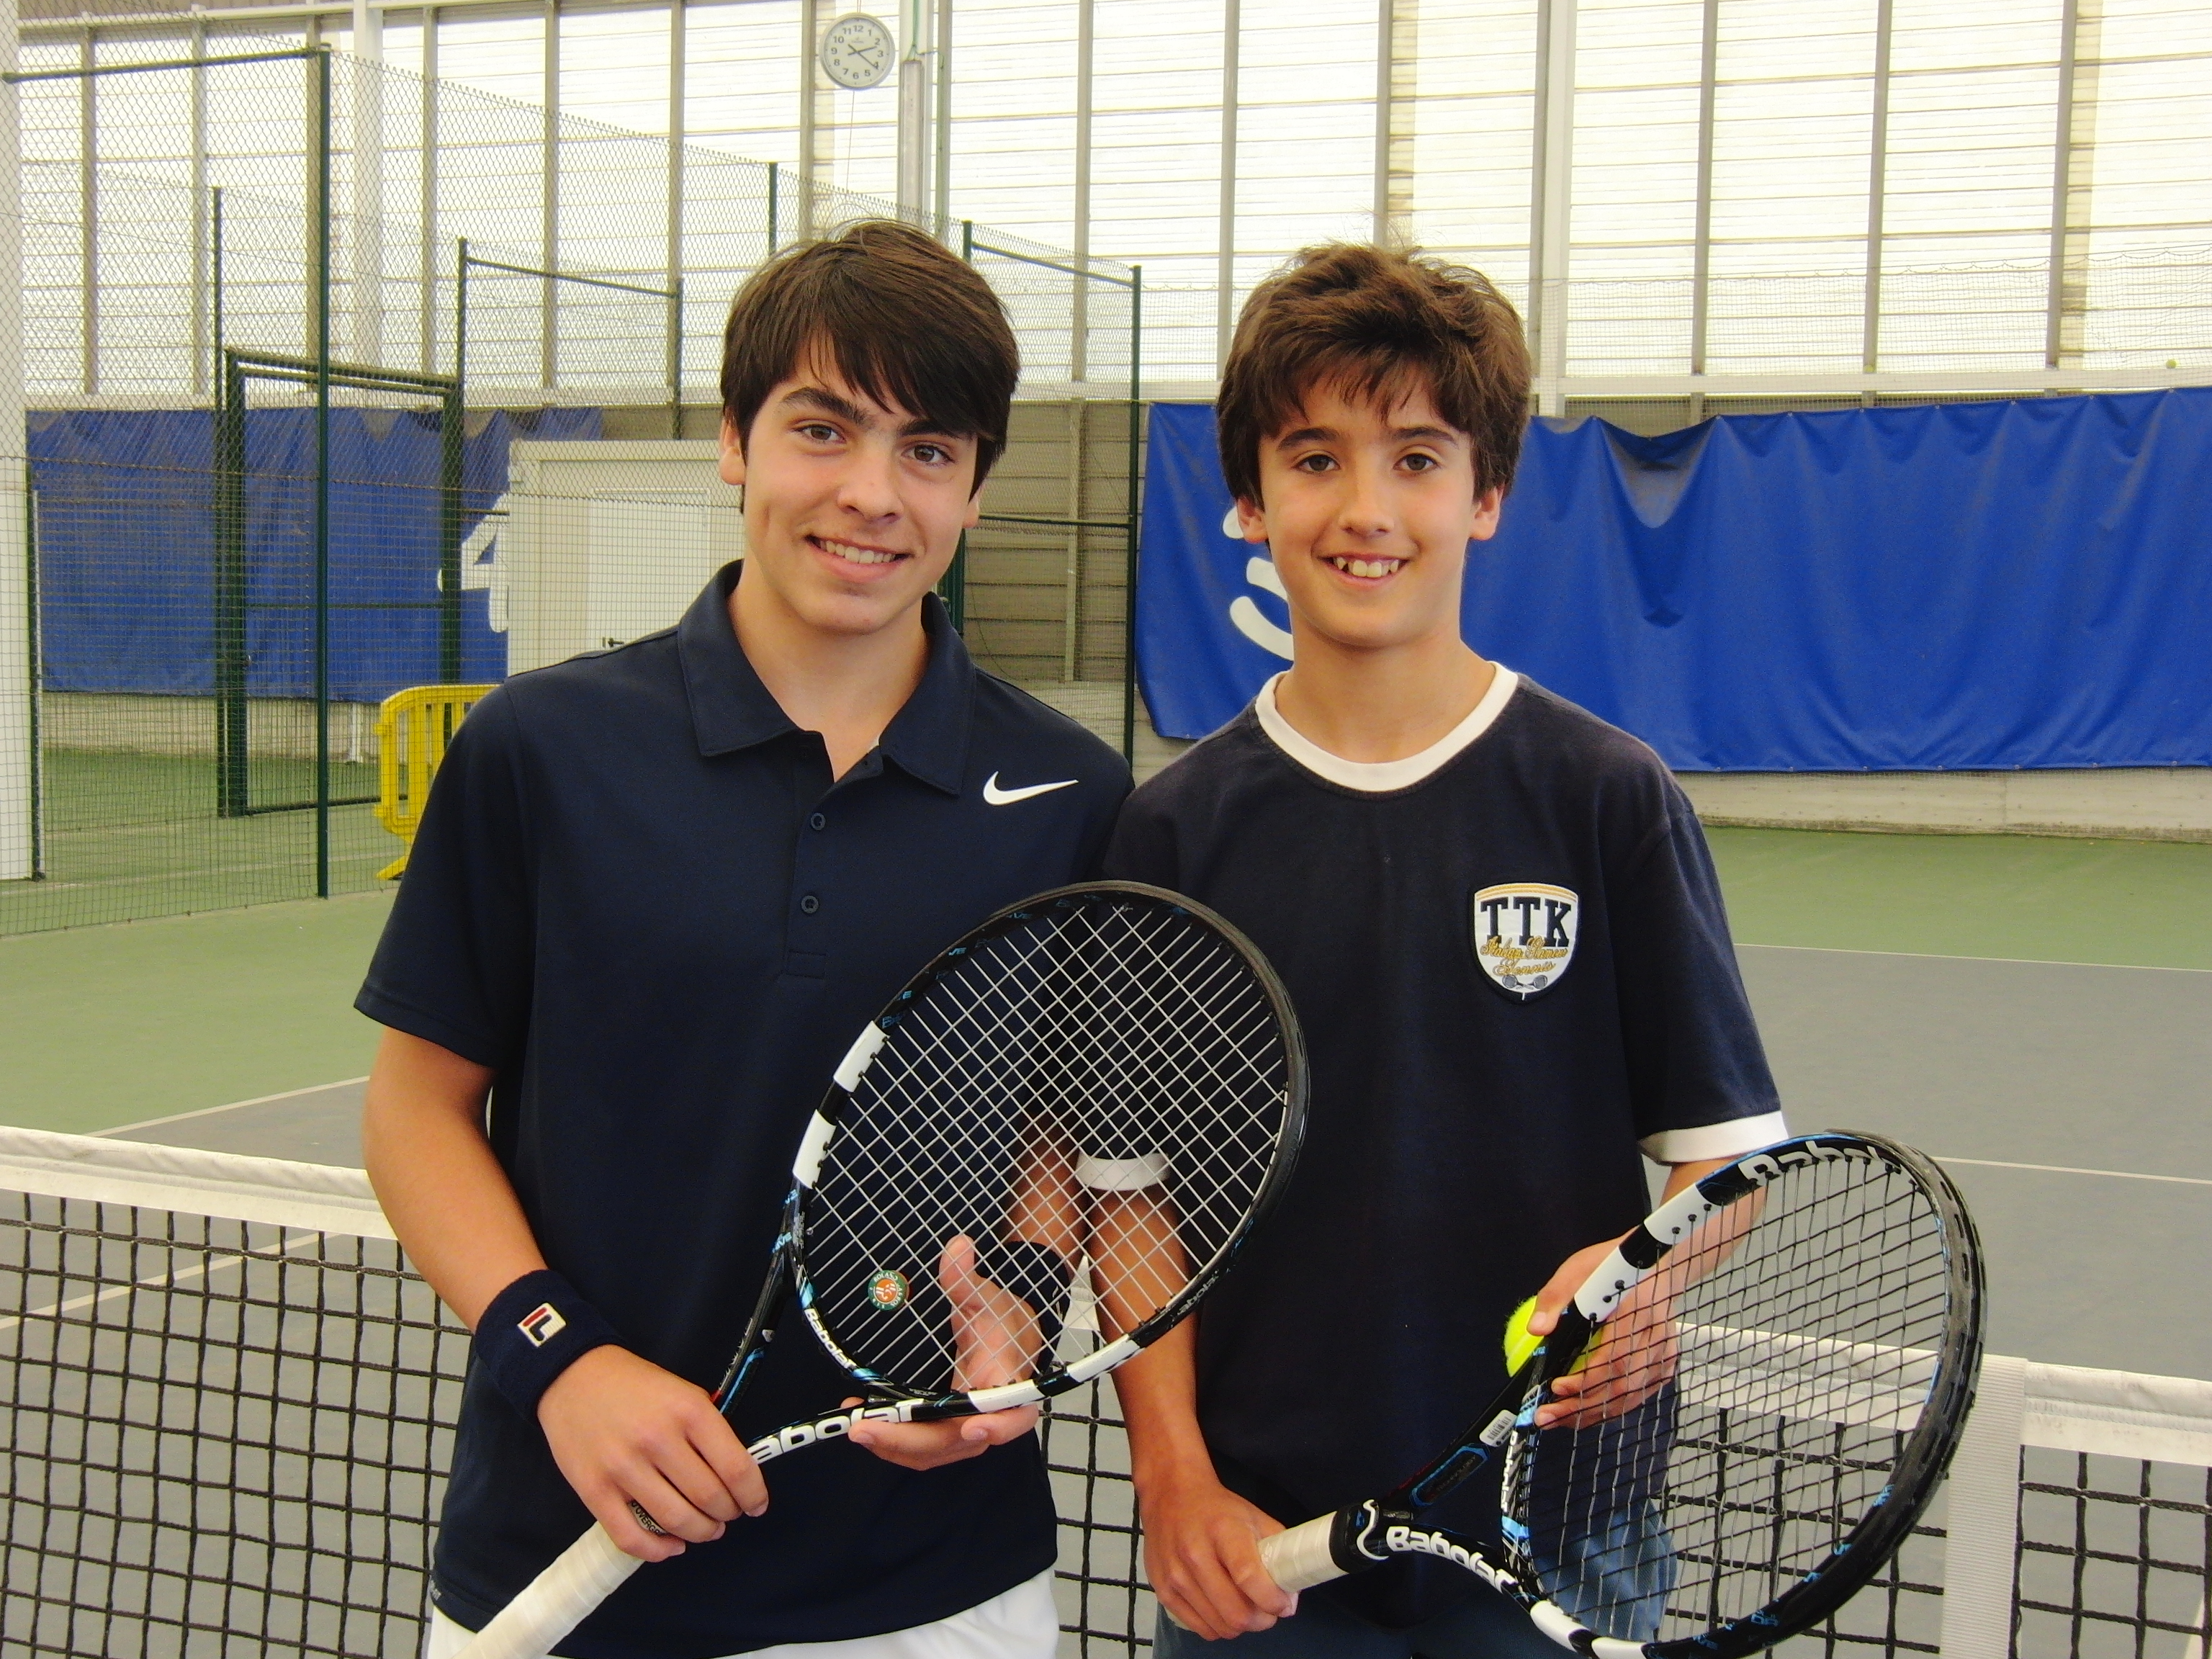 Campeones del campeonato infantil de tenis de Bizkaia en 2014